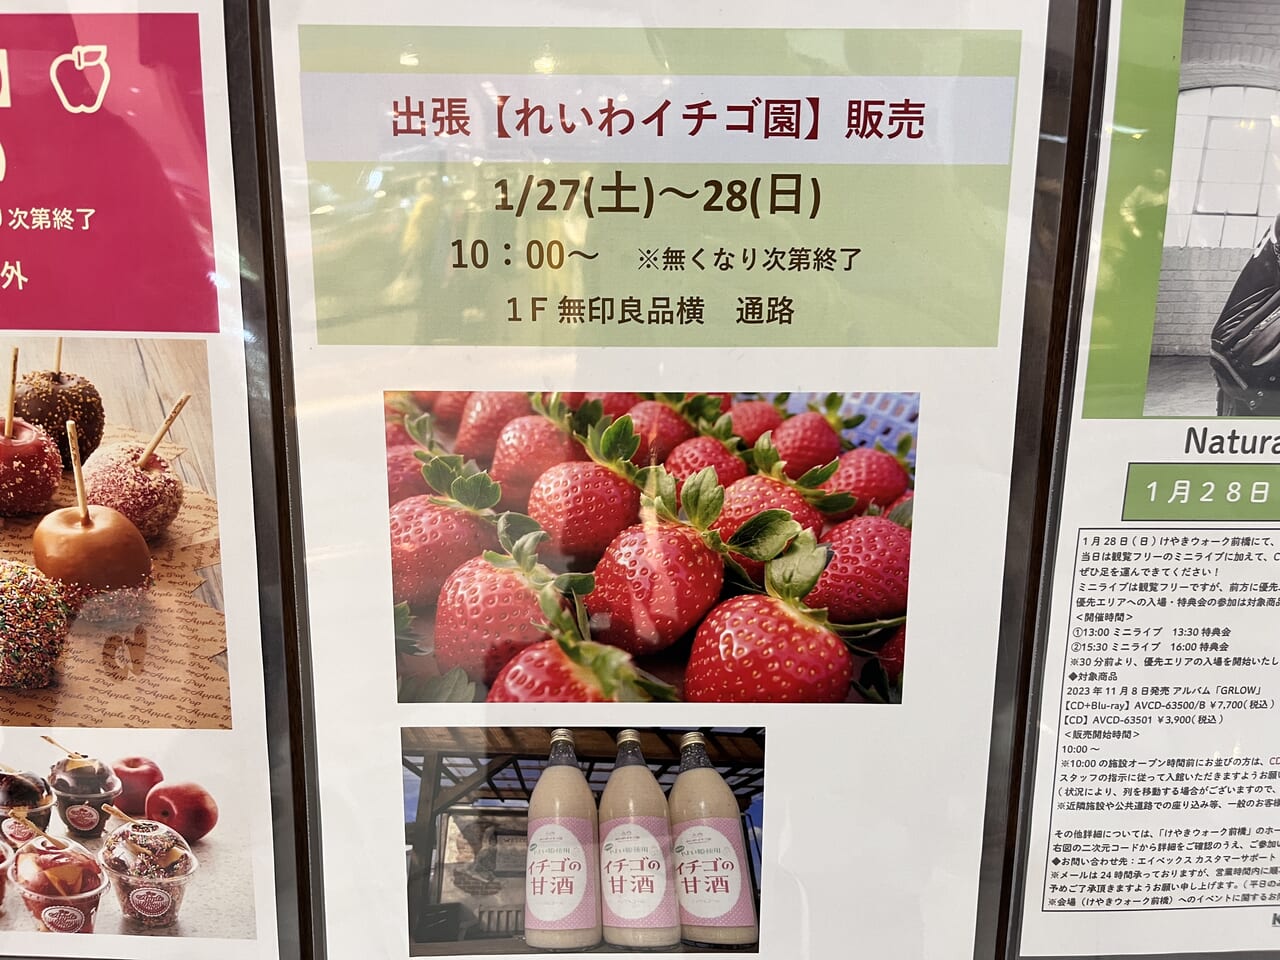 「れいわイチゴ園」の出張販売の告知ポスター